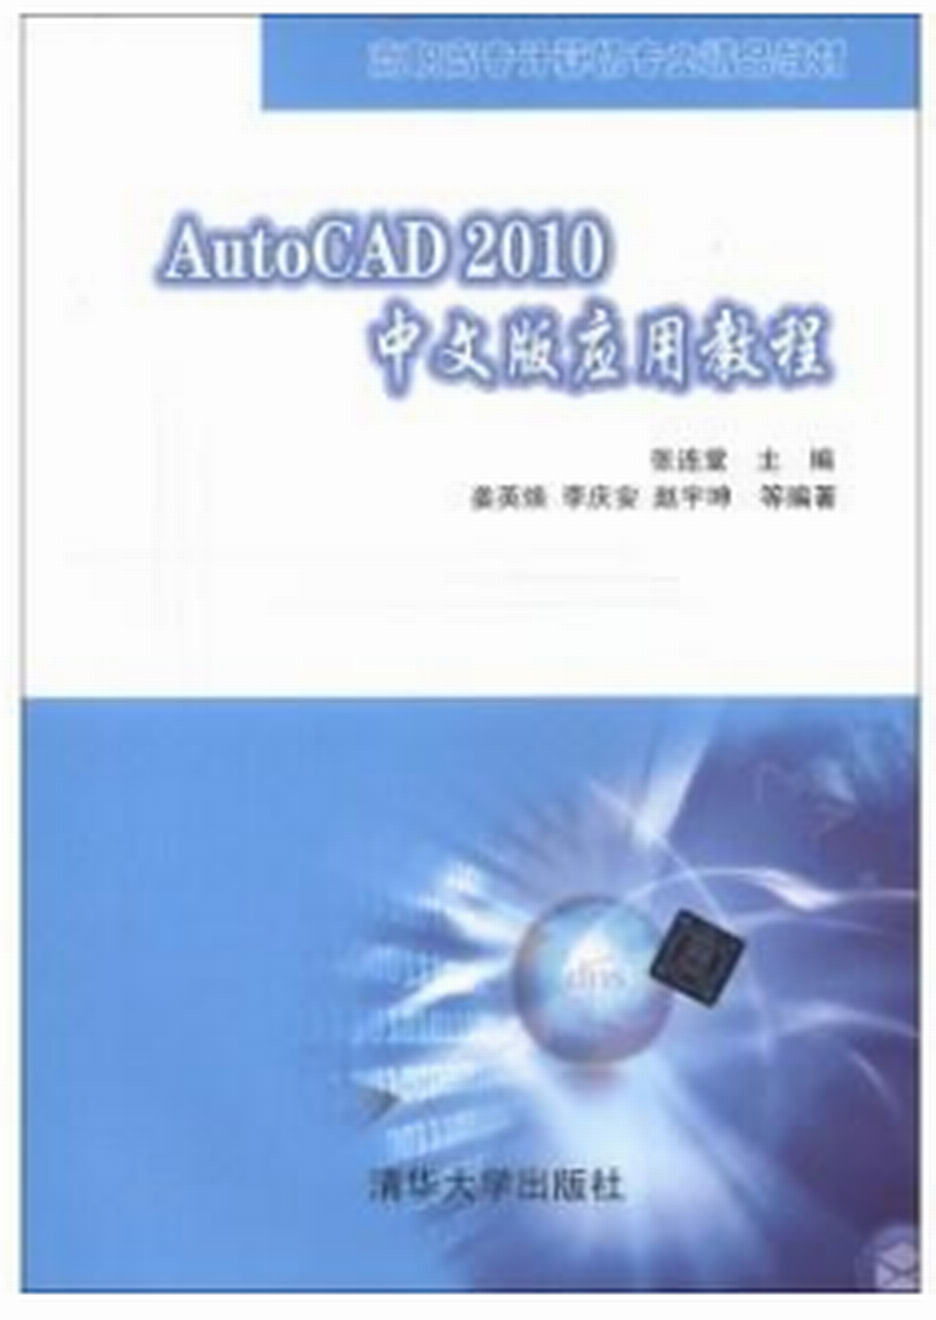 AutoCAD 2010中文版套用教程